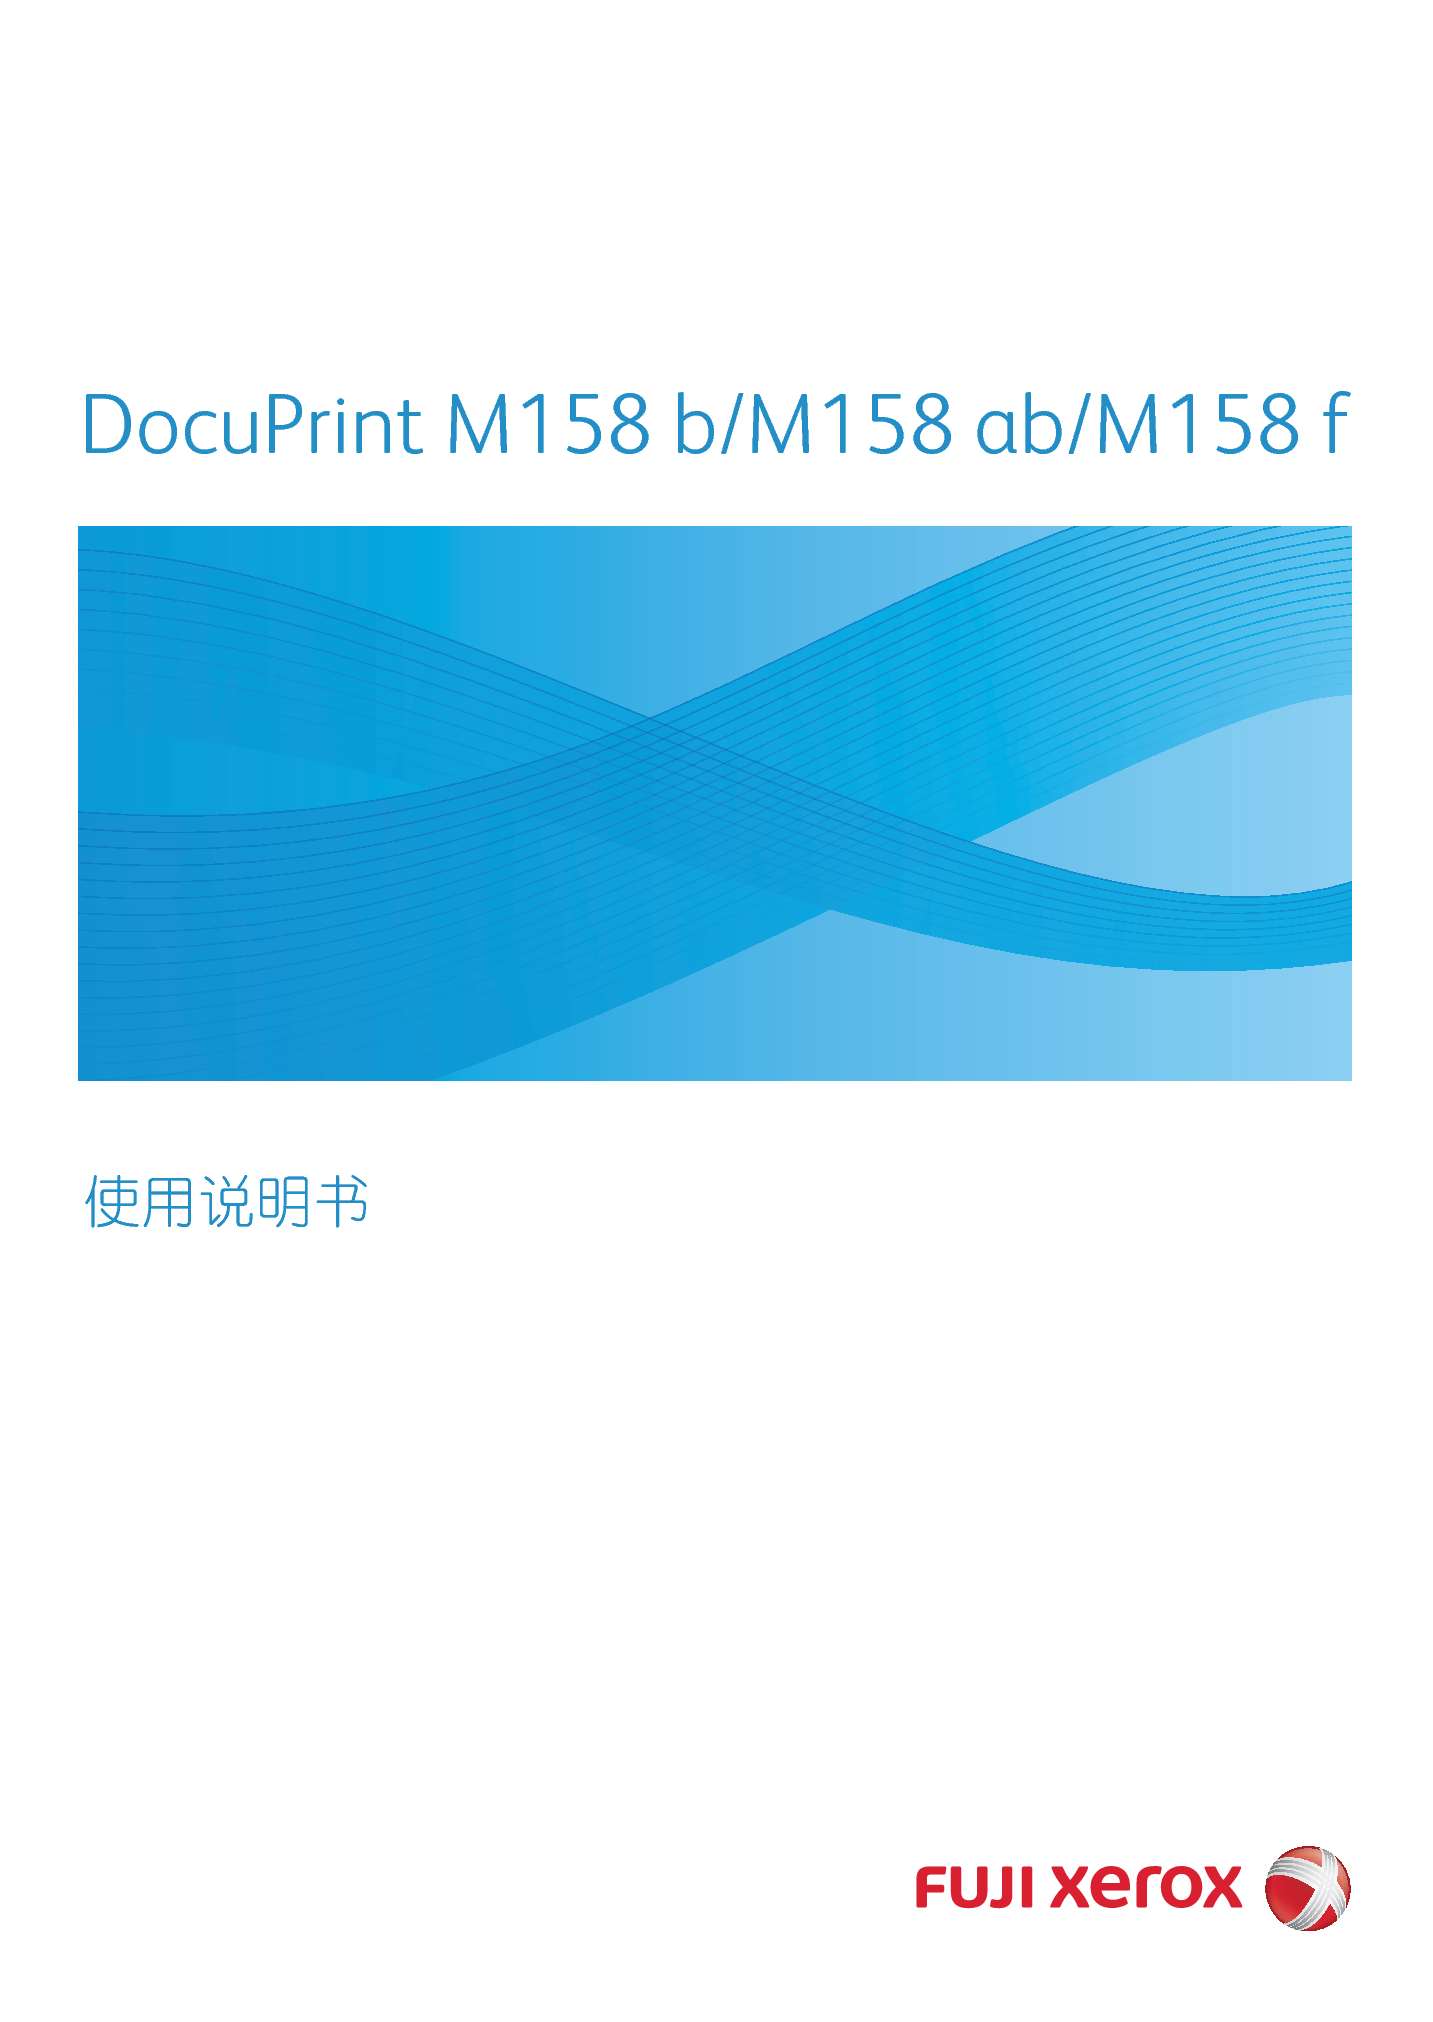 富士施乐 Fuji Xerox DocuPrint M158 ab 使用说明书 封面